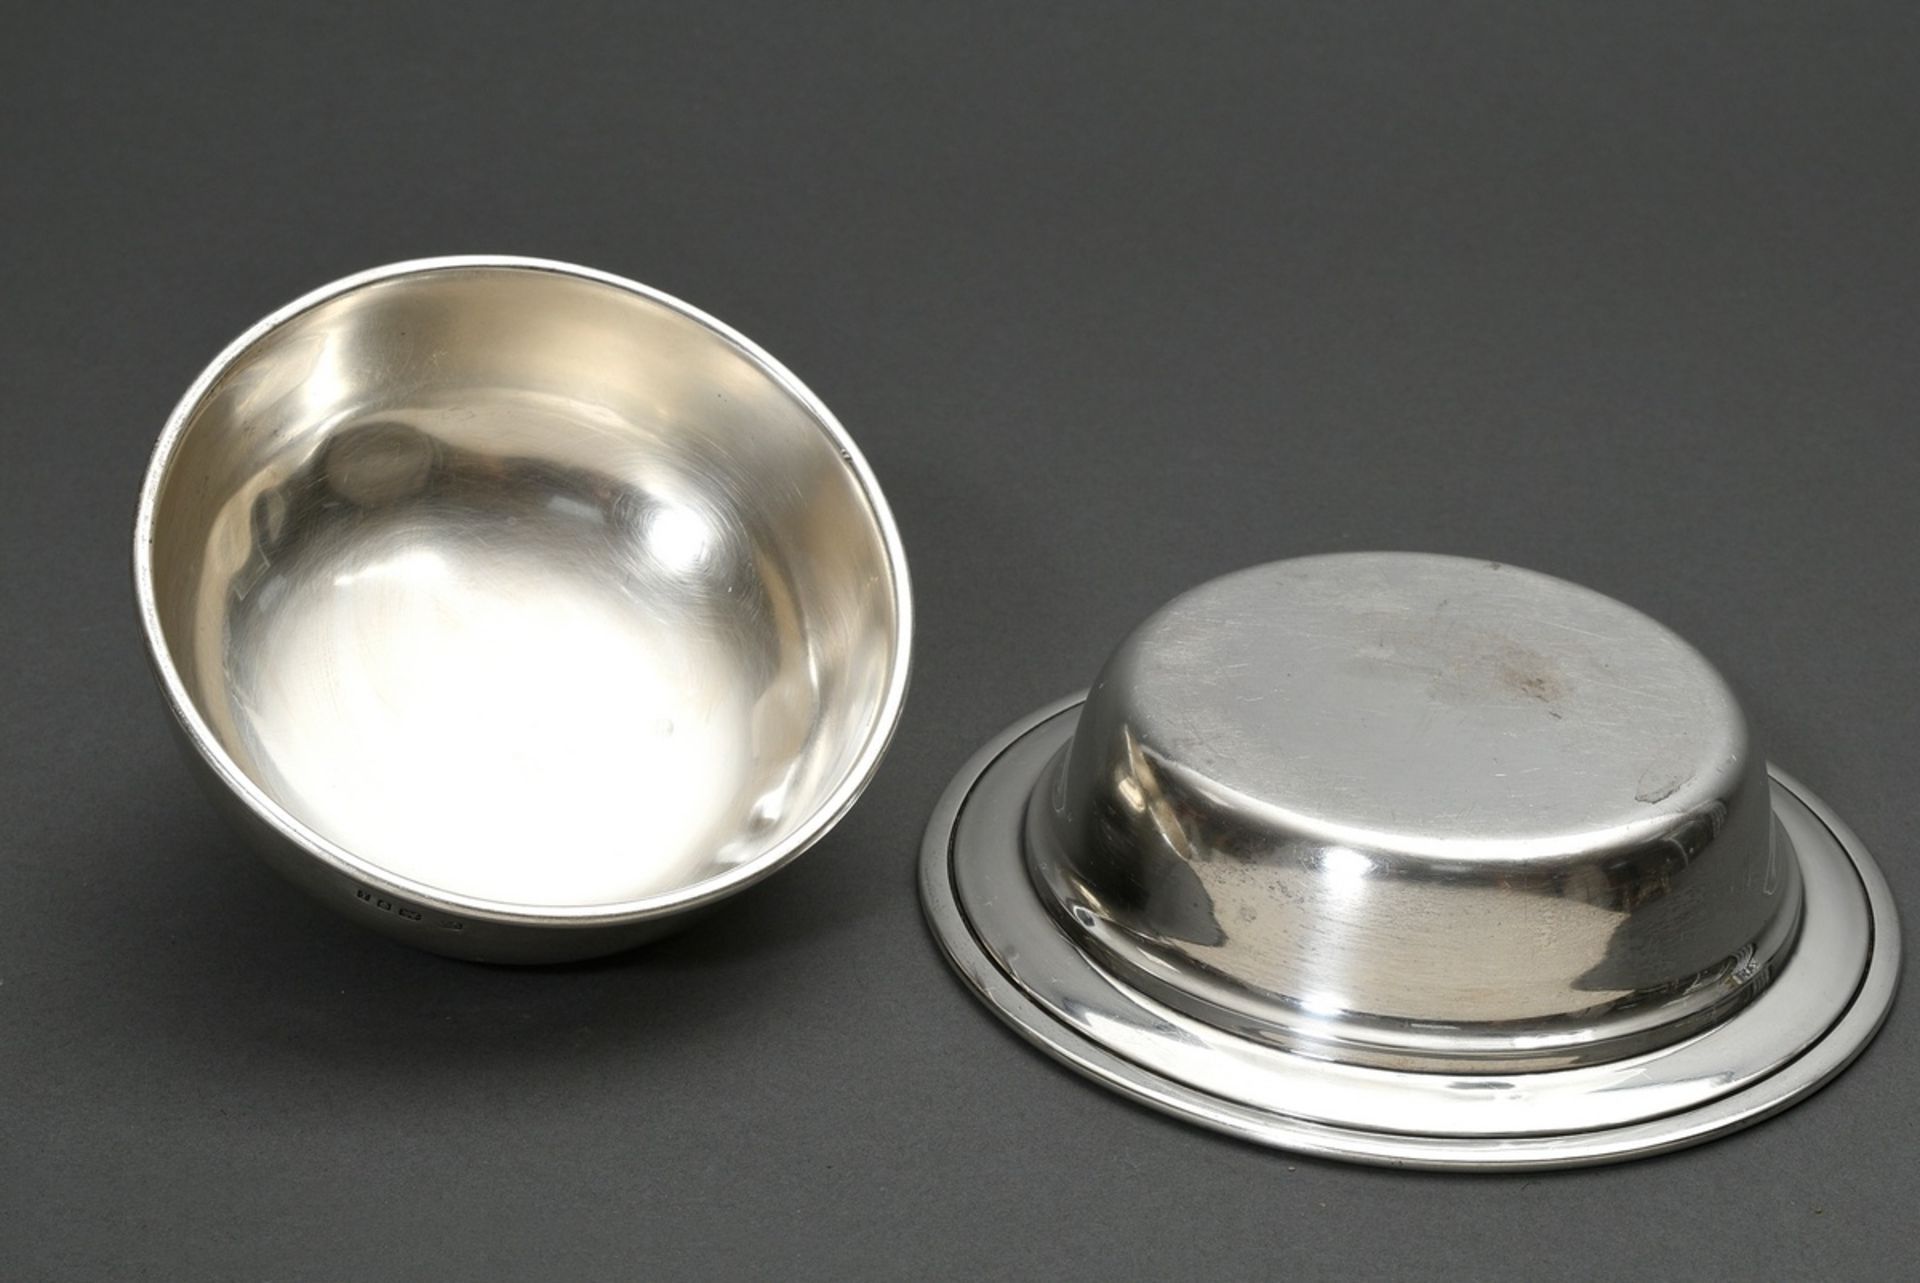 Runder englischer Silber Dish in schlichter Façon, MZ: C.A., London 1924, Silber 925, 581g, H. 12cm - Bild 3 aus 4